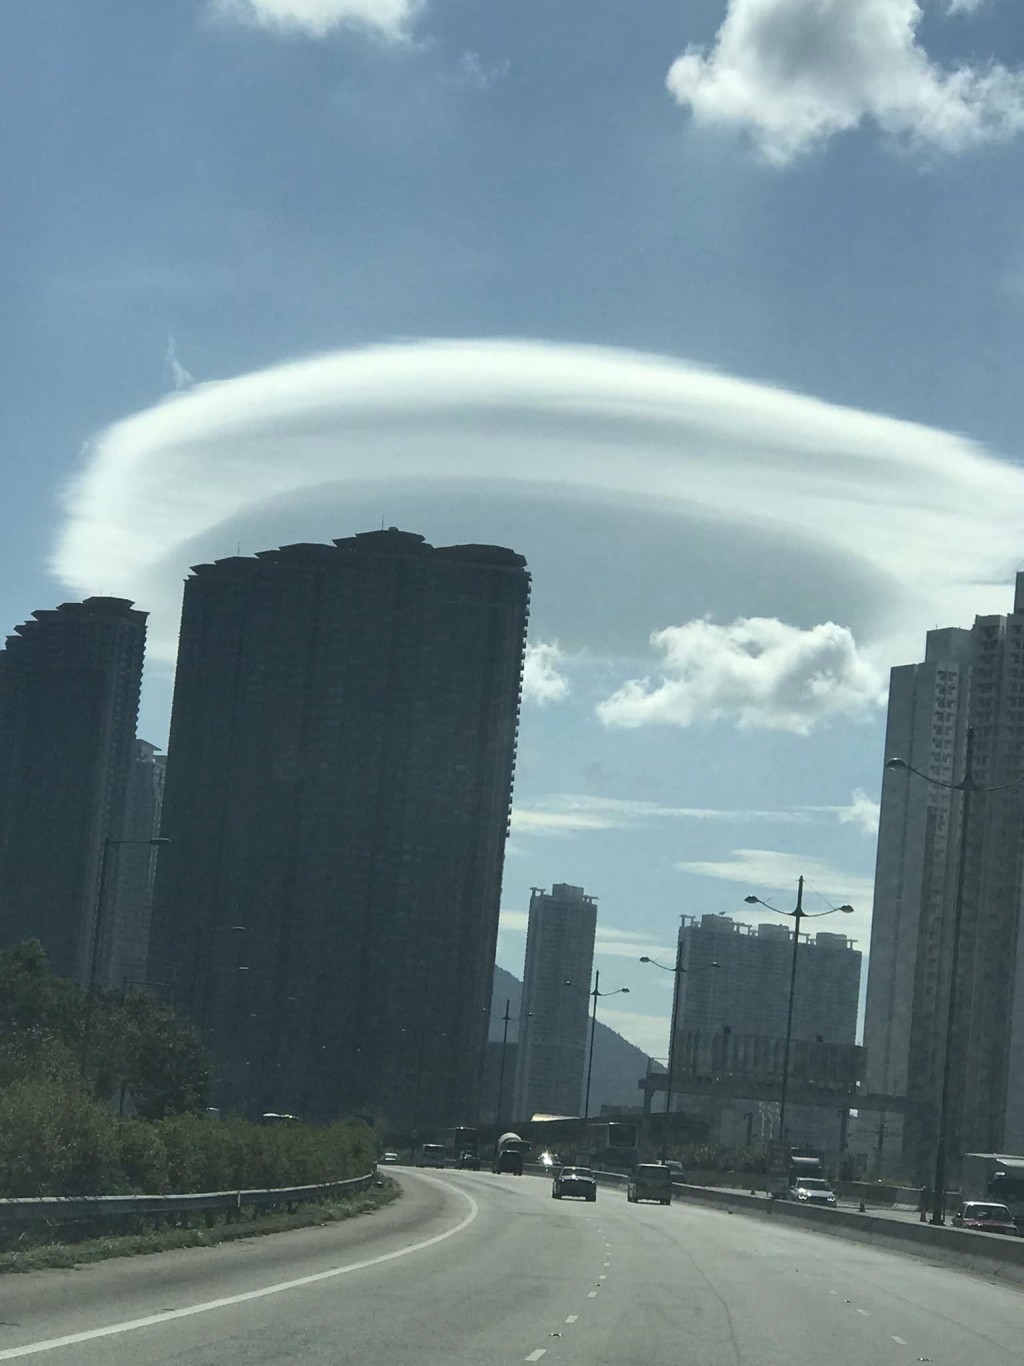 相中的云称为荚状云 （Lenticularis）。fb「香港风景摄影会」Chan Wai Nang摄